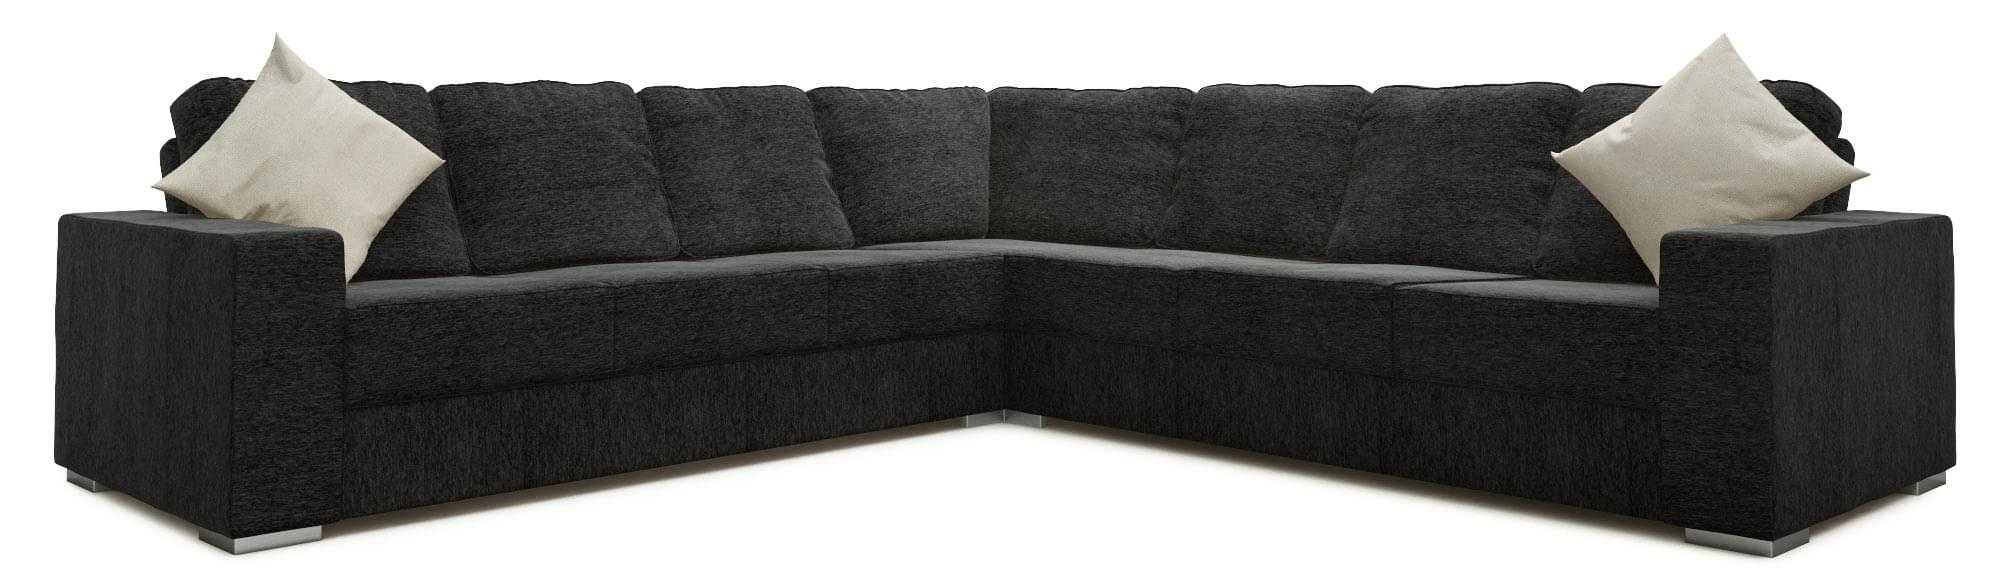 Ato 4X4 Corner Sofa